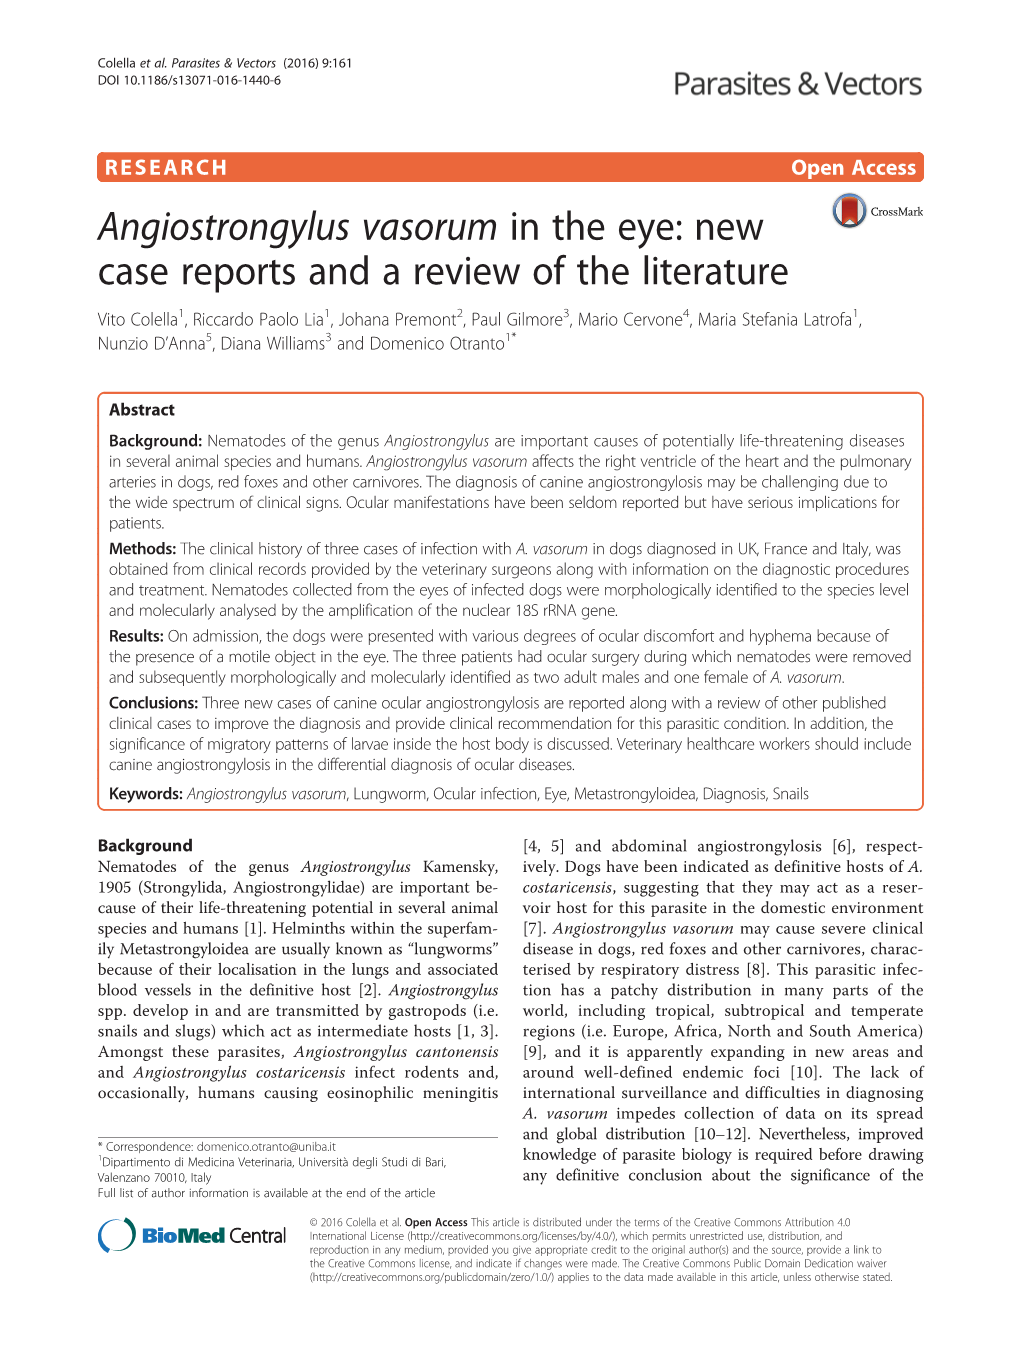 Angiostrongylus Vasorum in The